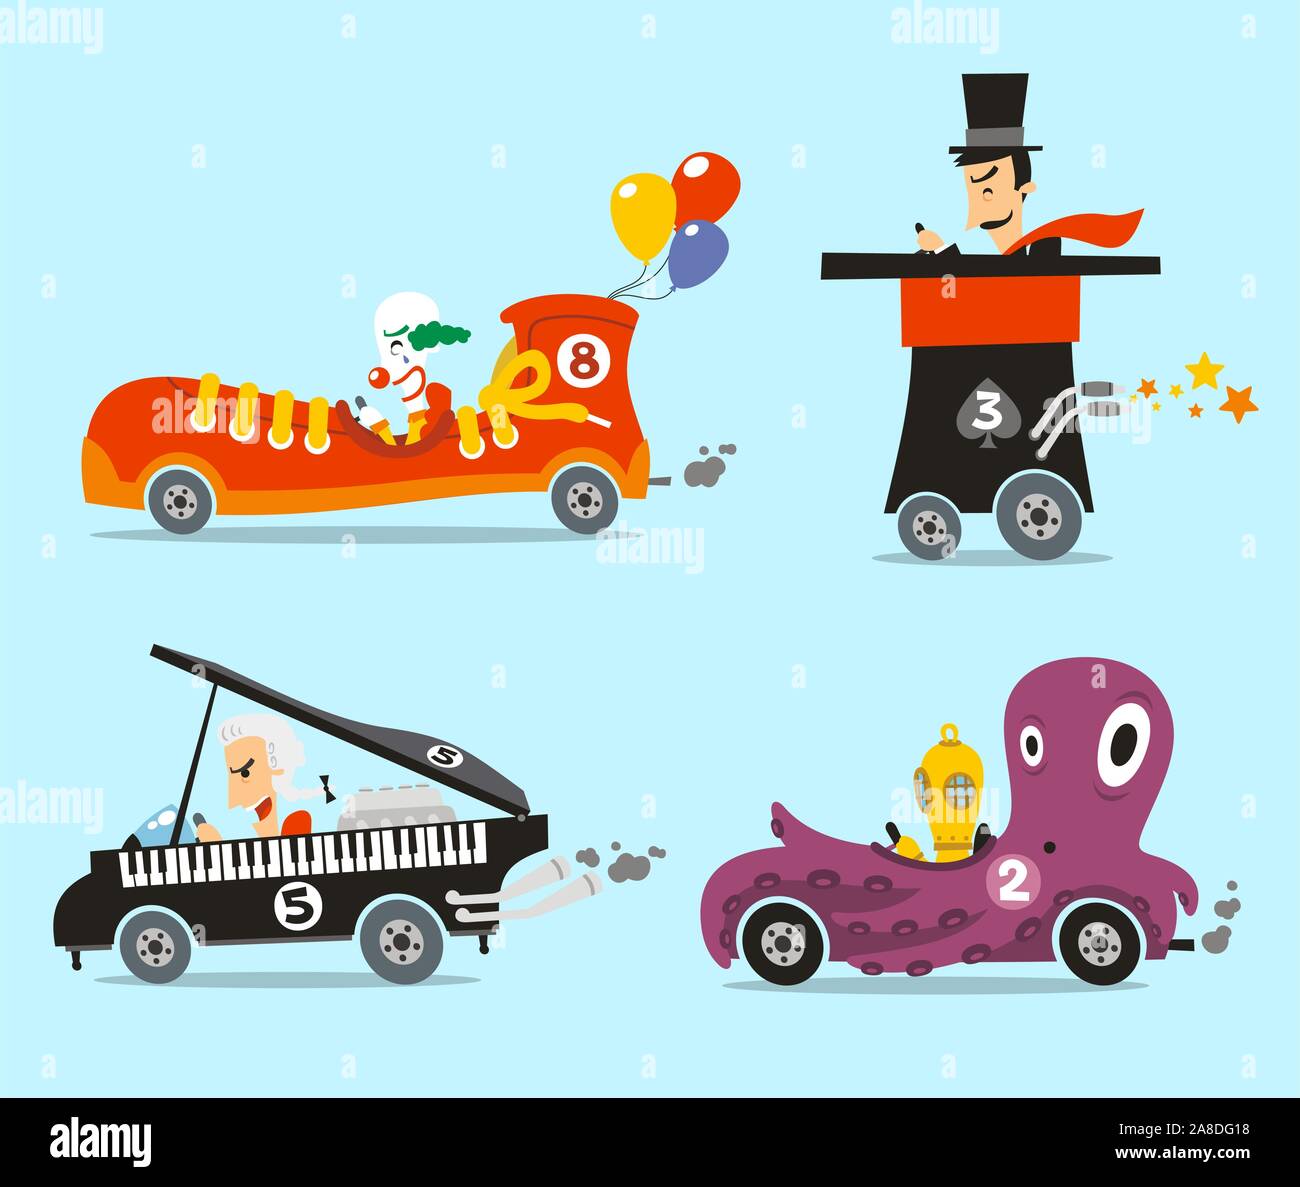 Verrückte Autos Vektor-Illustration-Cartoon-Satz mit vier verschiedenen fremden Autos wie, kichern Auto, Zylinderhut Katze, Klavier Auto und Oktopus Auto. Stock Vektor